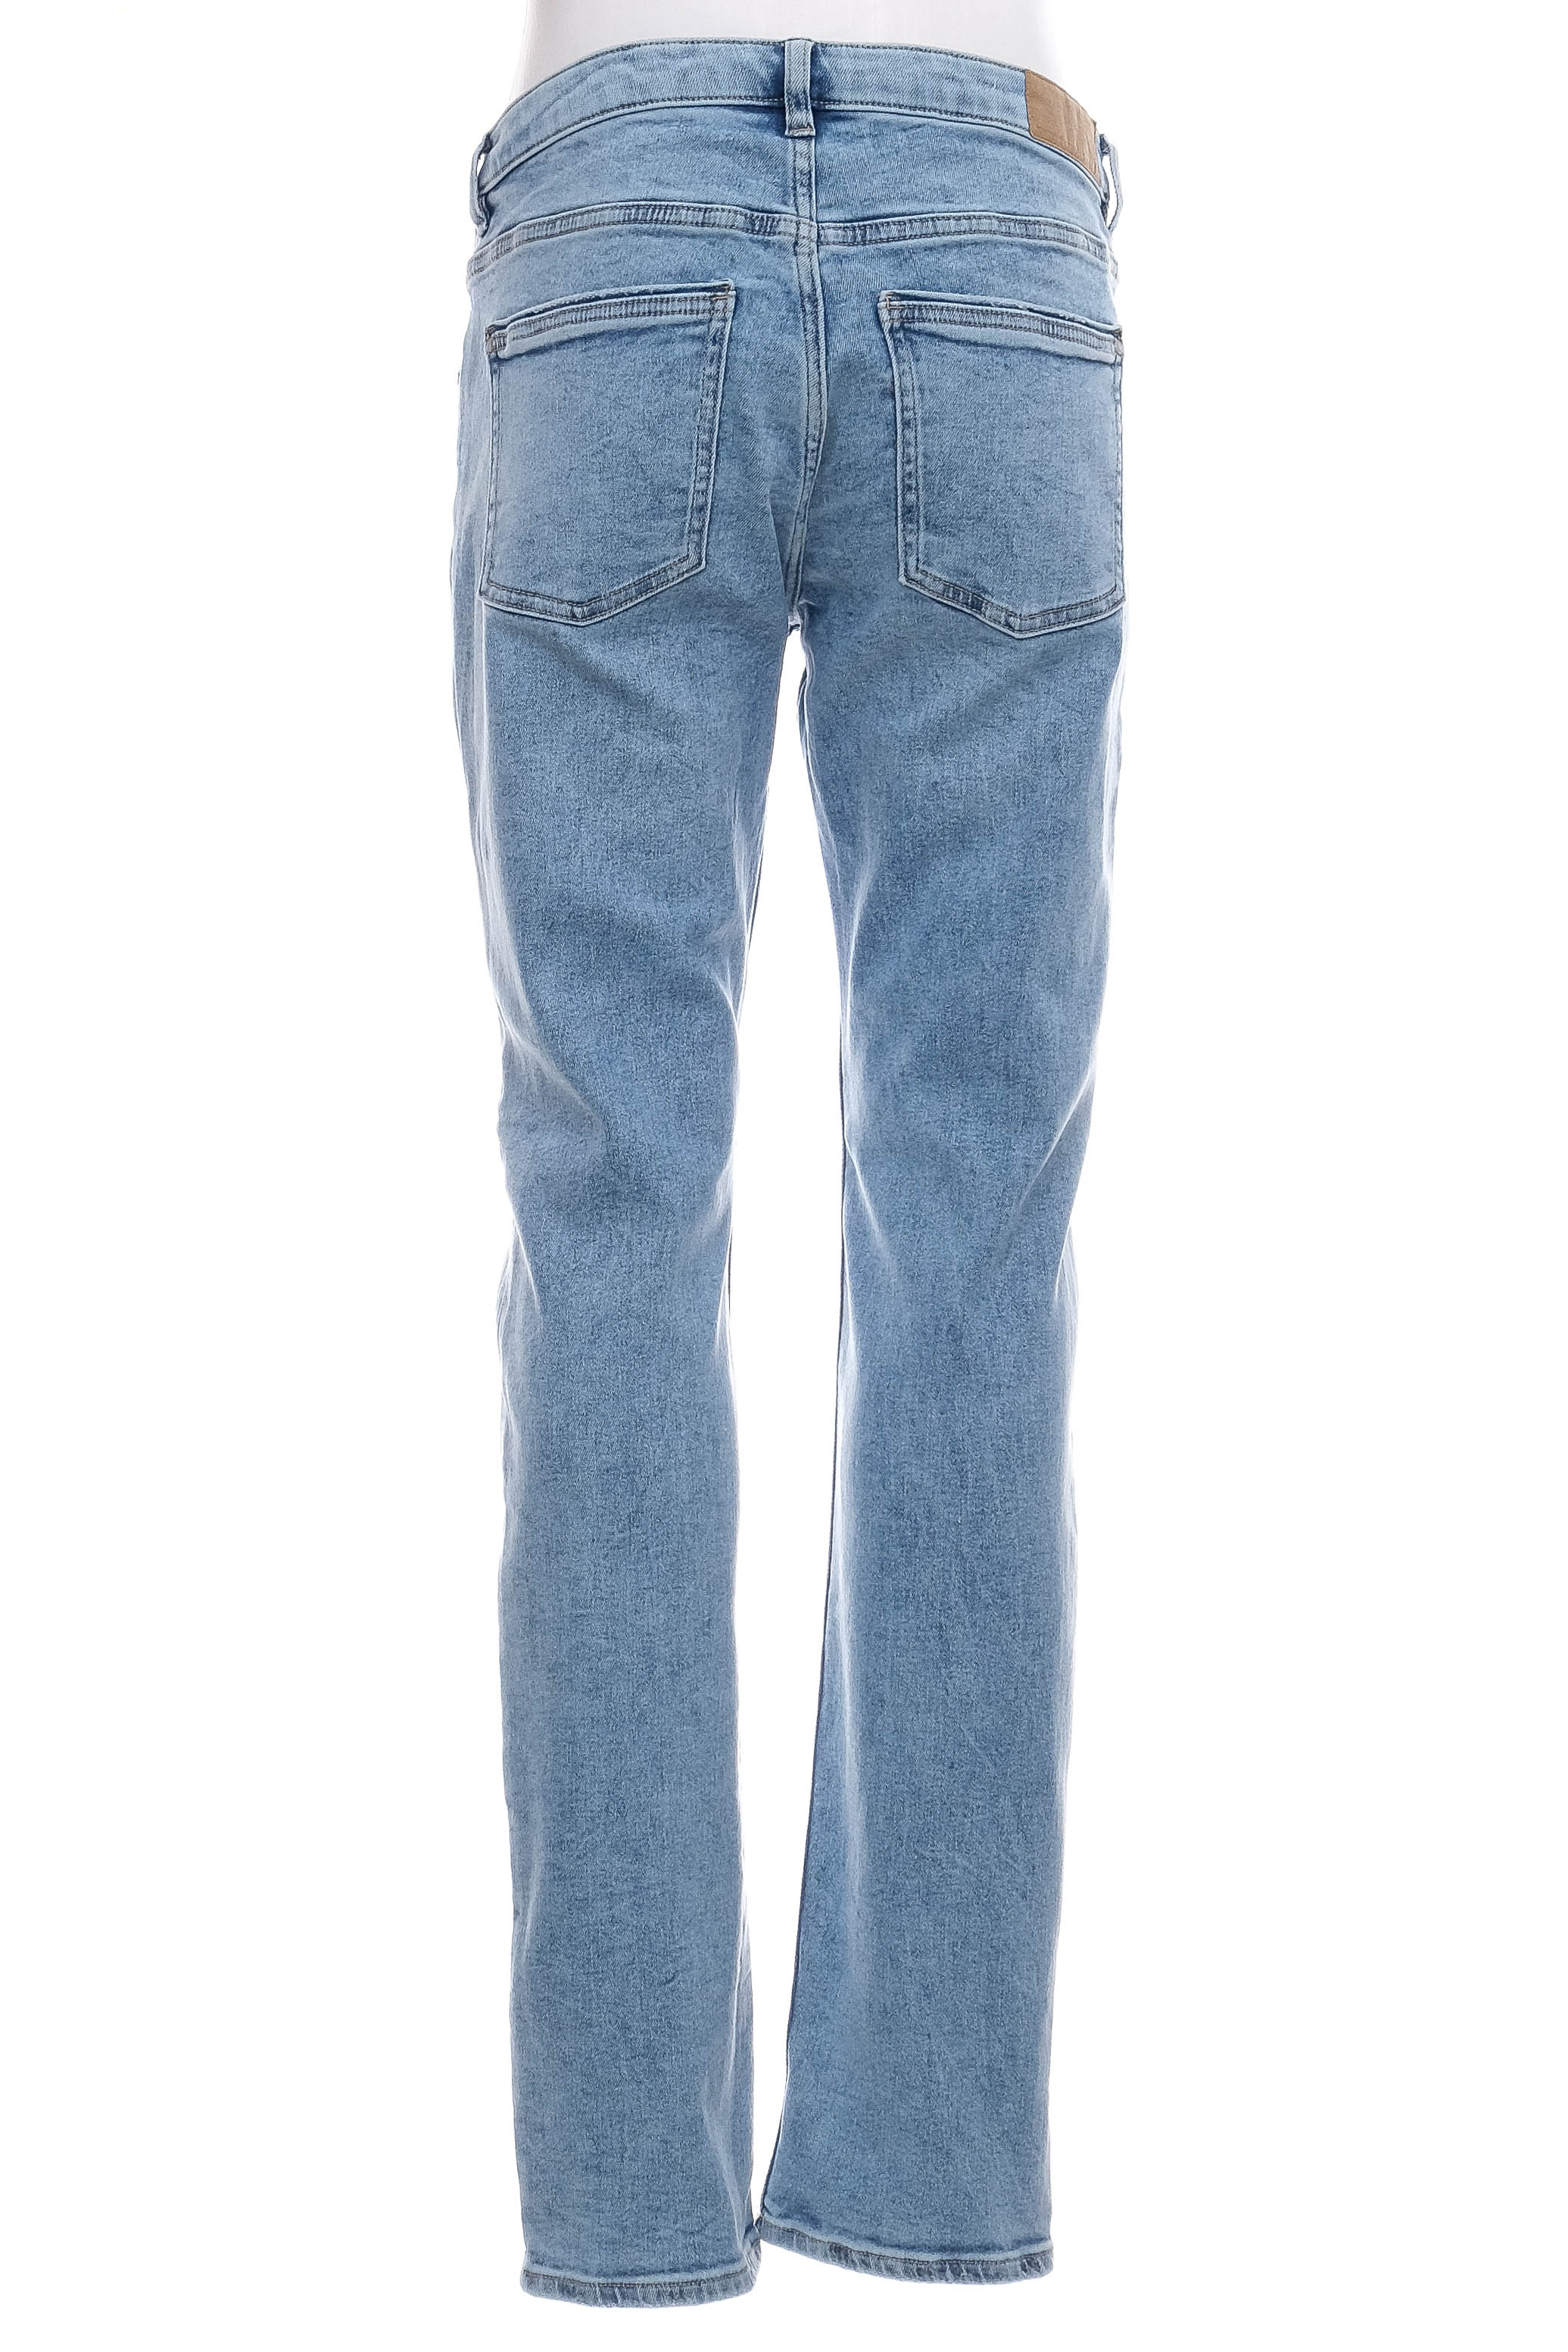 Men's jeans - ESPRIT - 1